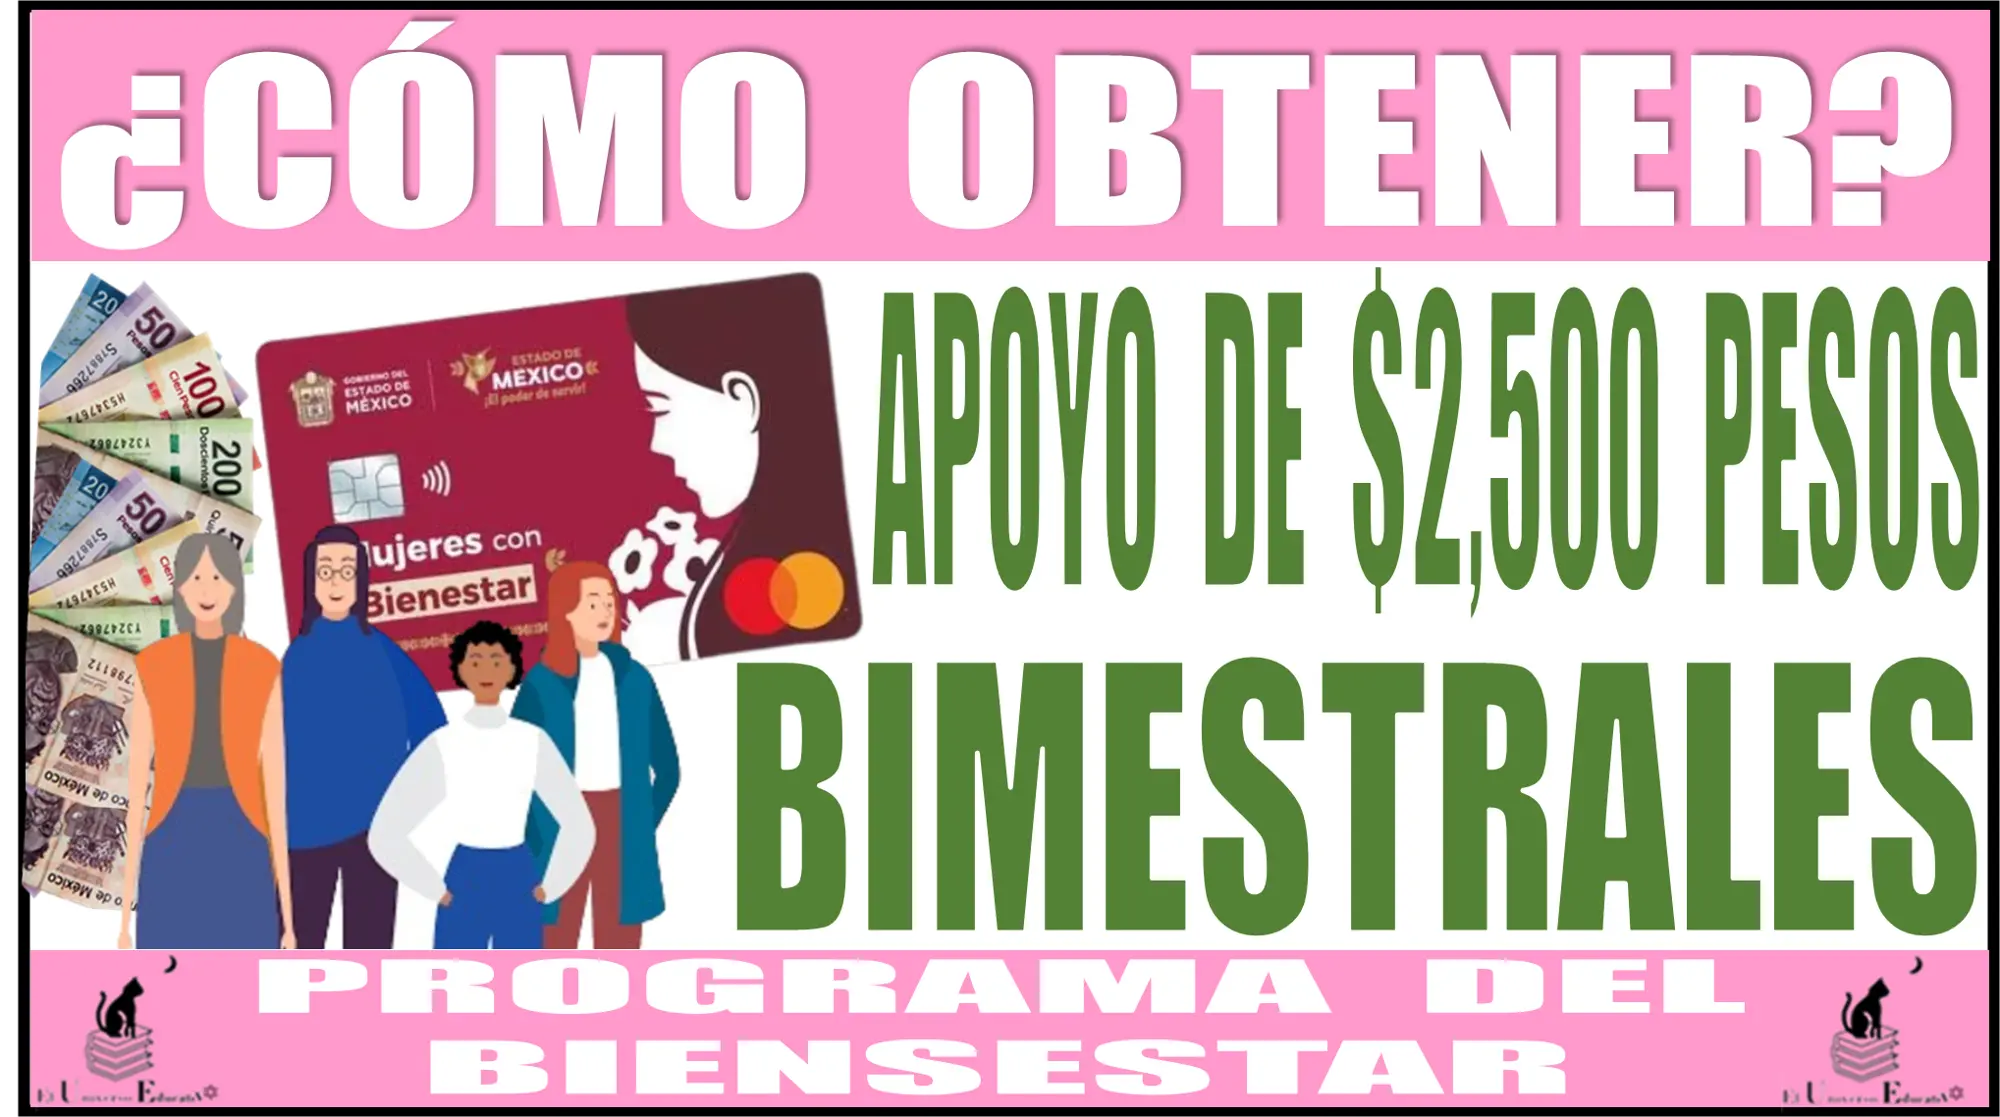 ¿CÓMO OBTENER EL APOYO DE $2,500 PESOS BIMESTRALES? | PROGRAMA DEL BIENESTAR 